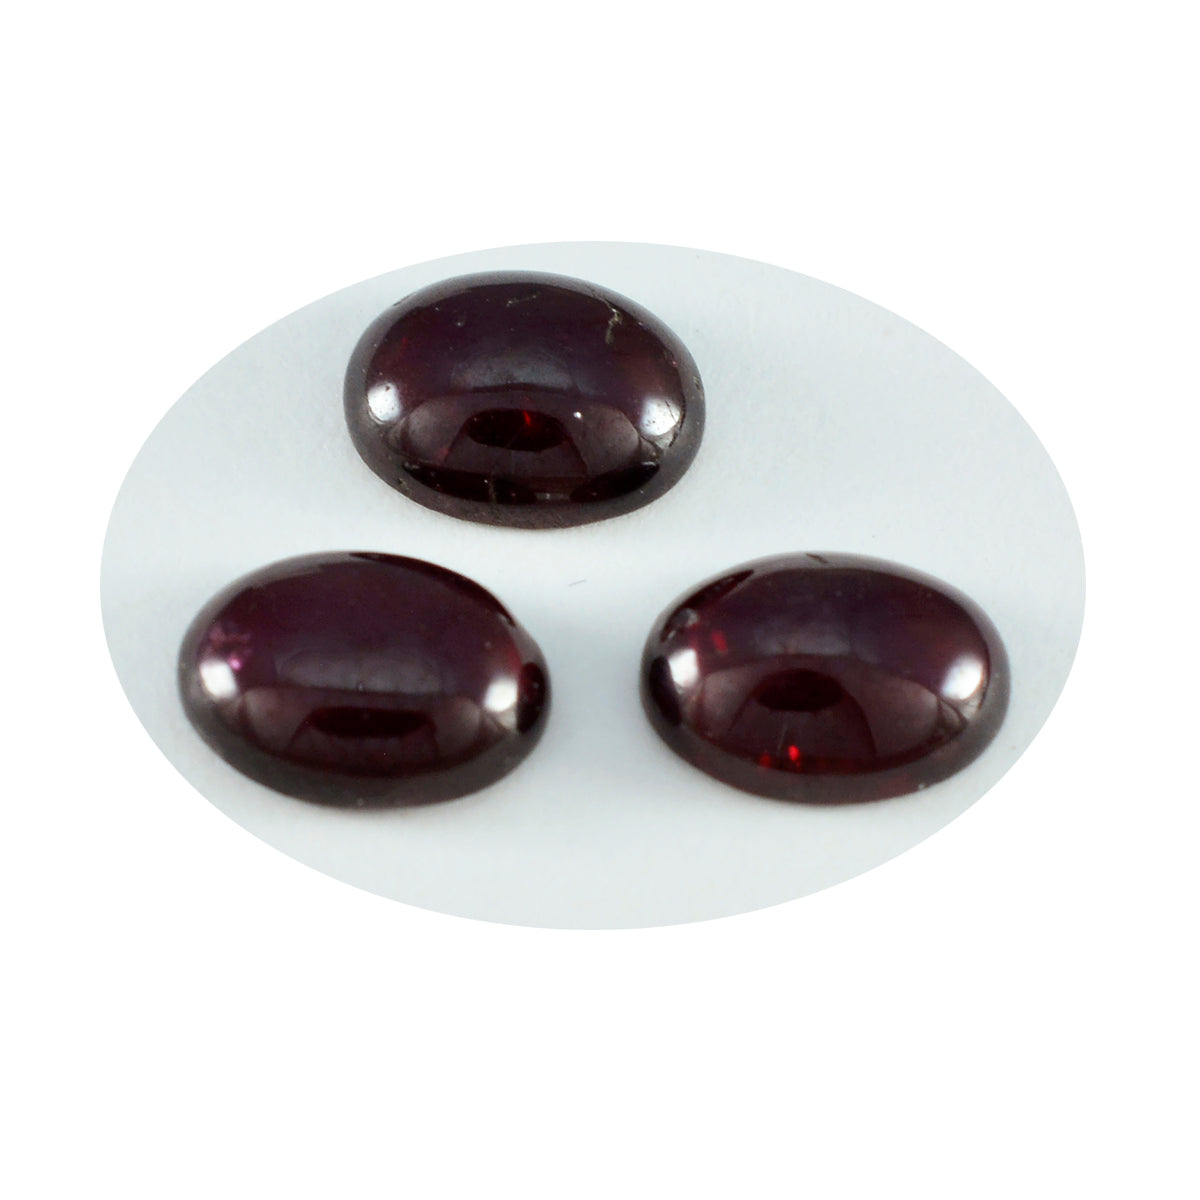 Riyogems 1 pieza cabujón de granate rojo 10x14 mm forma ovalada piedra preciosa de calidad asombrosa